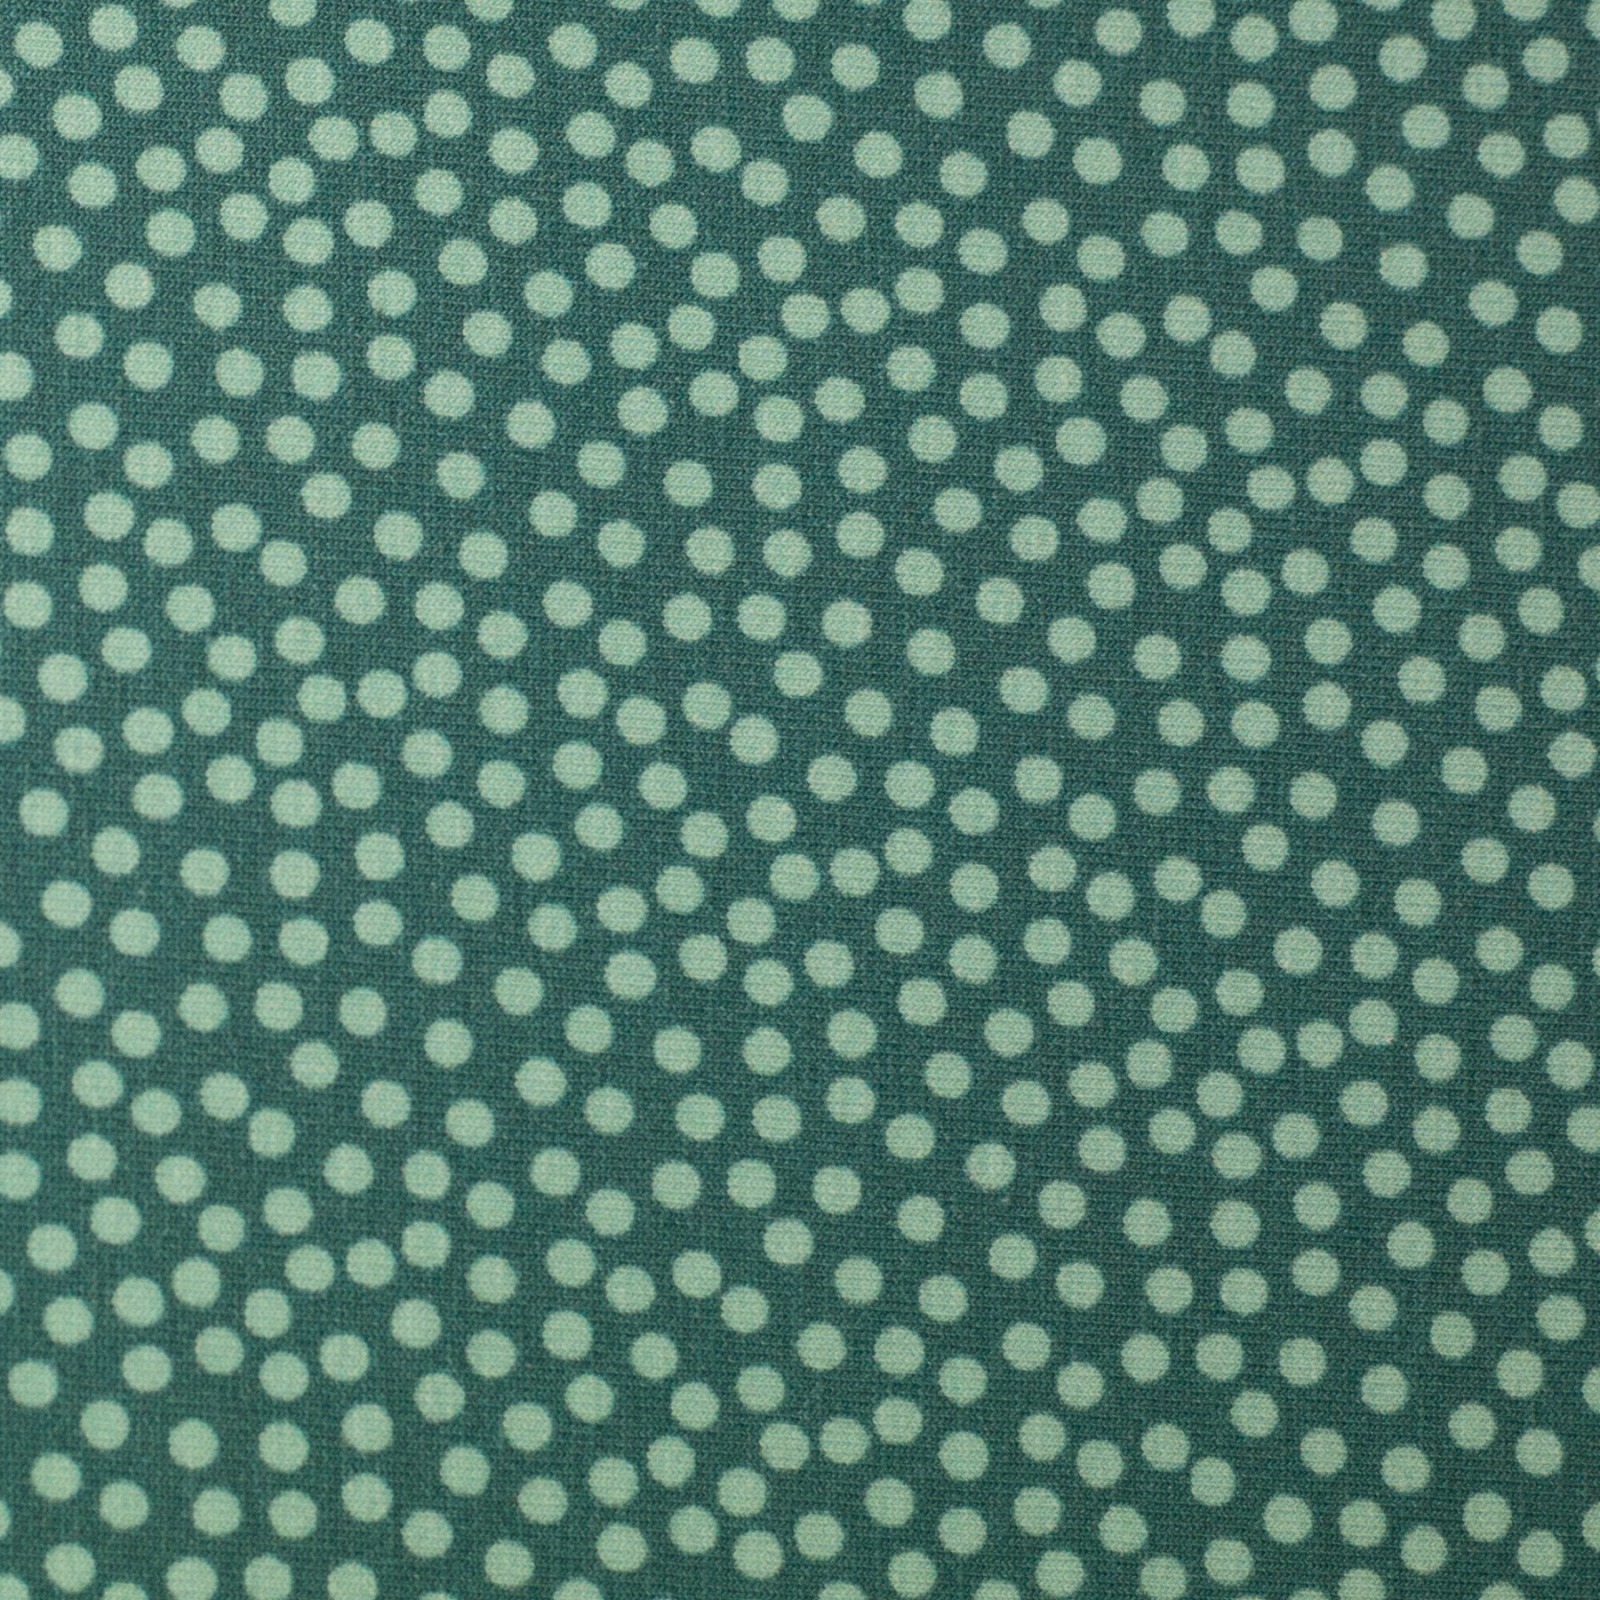 0,5m Jersey Joris Dots Punkte unregelmäßig, mint smaragd 3